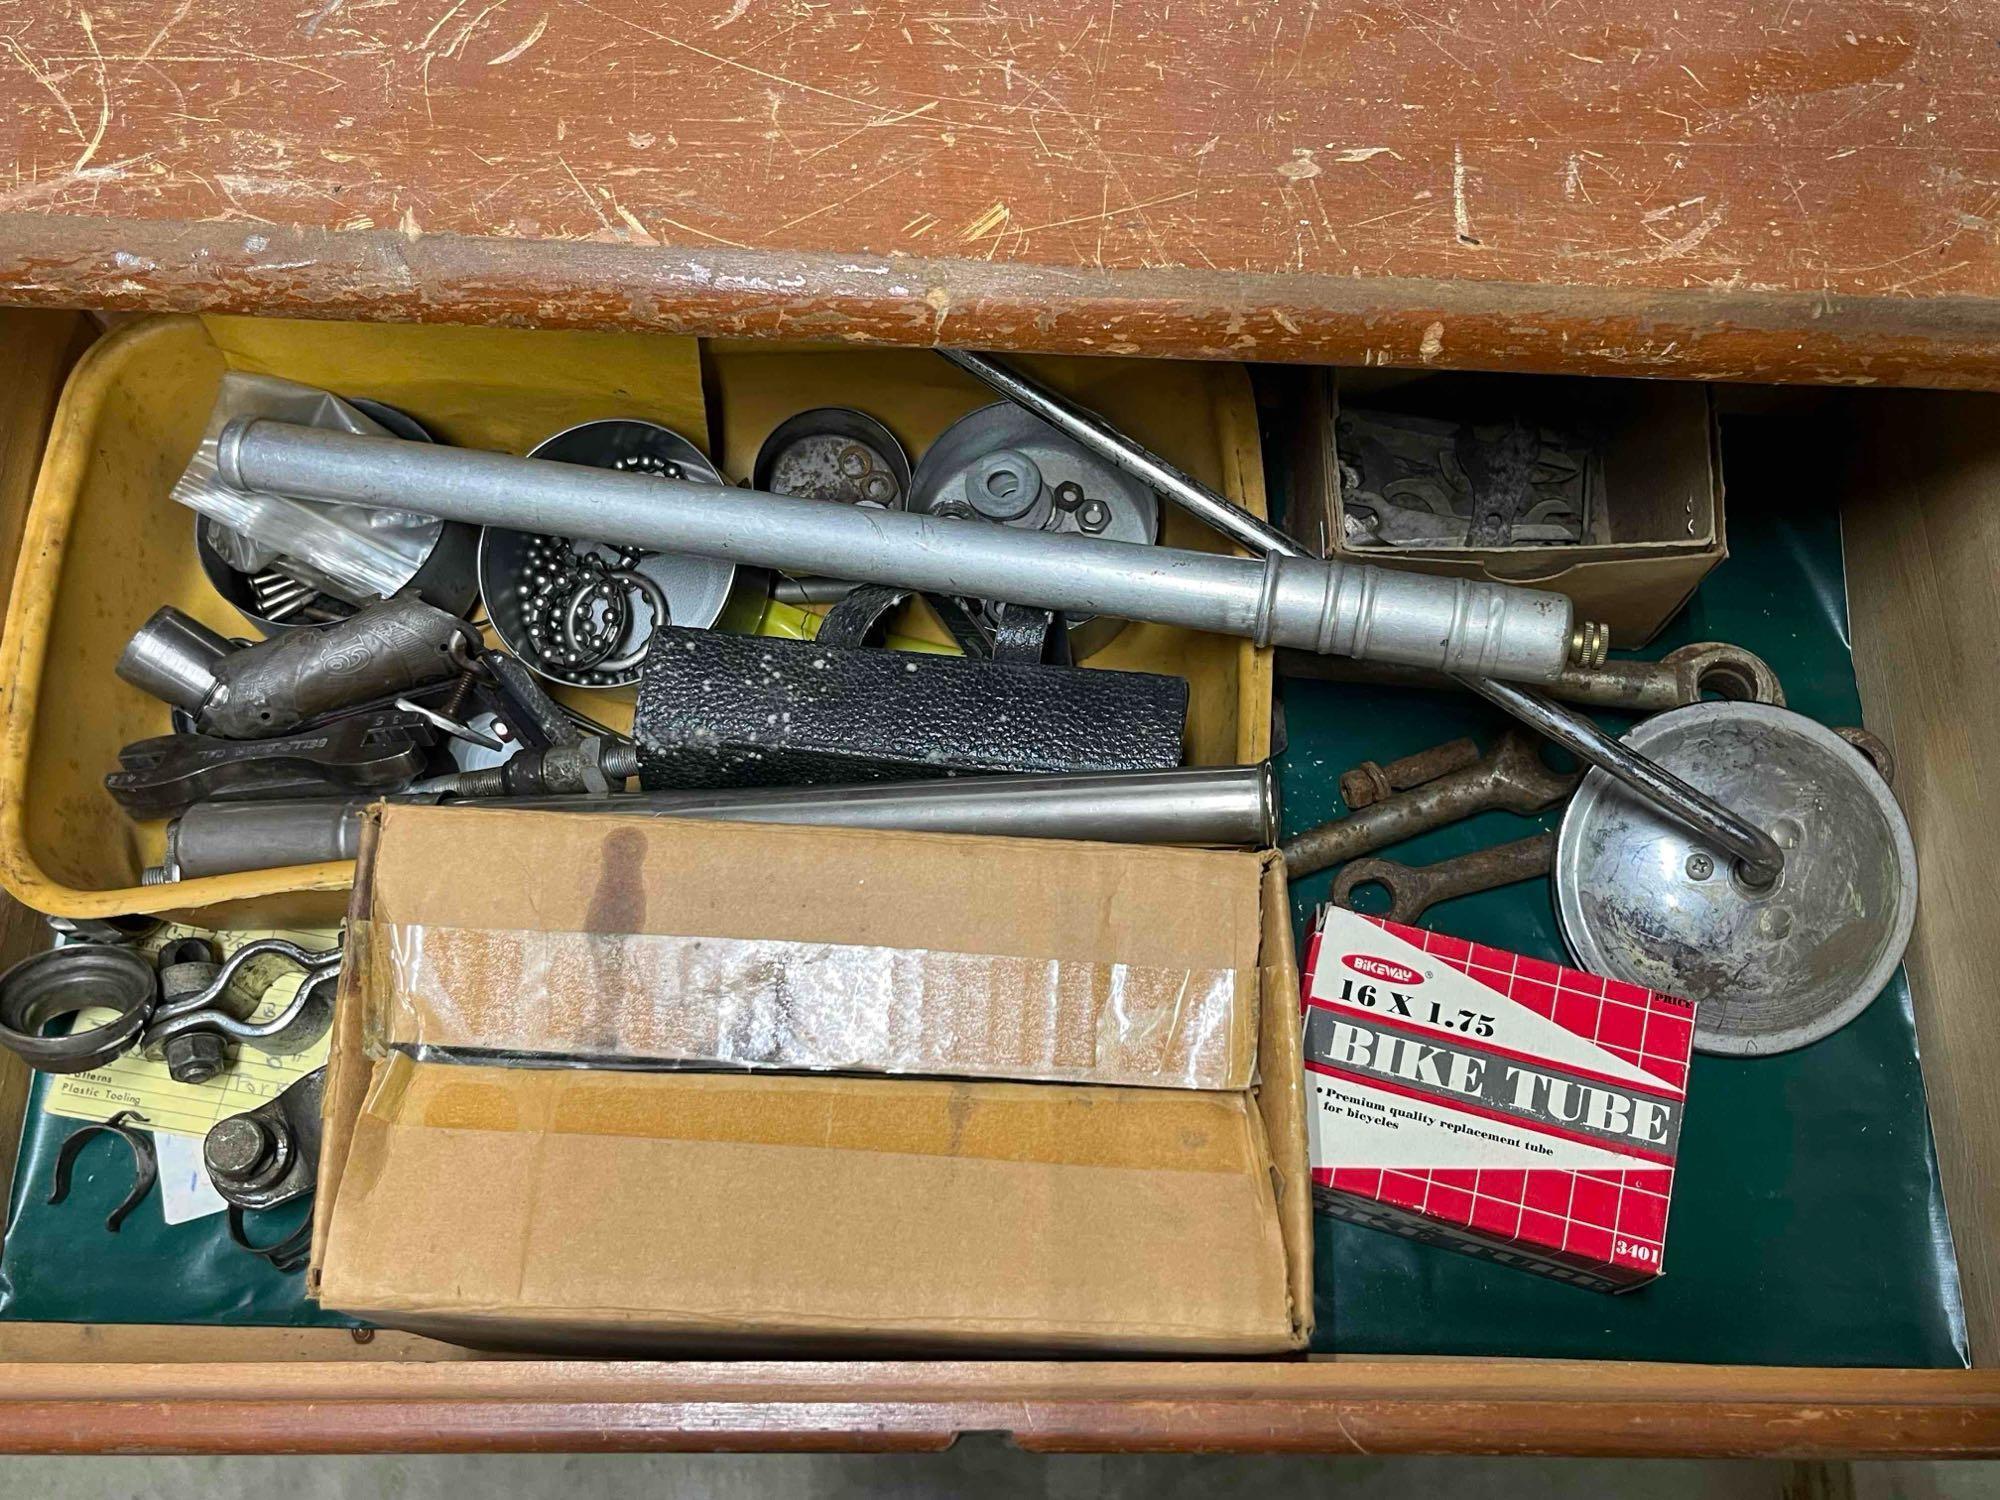 Wooden Dresser, Metal File, Fan, Hardware